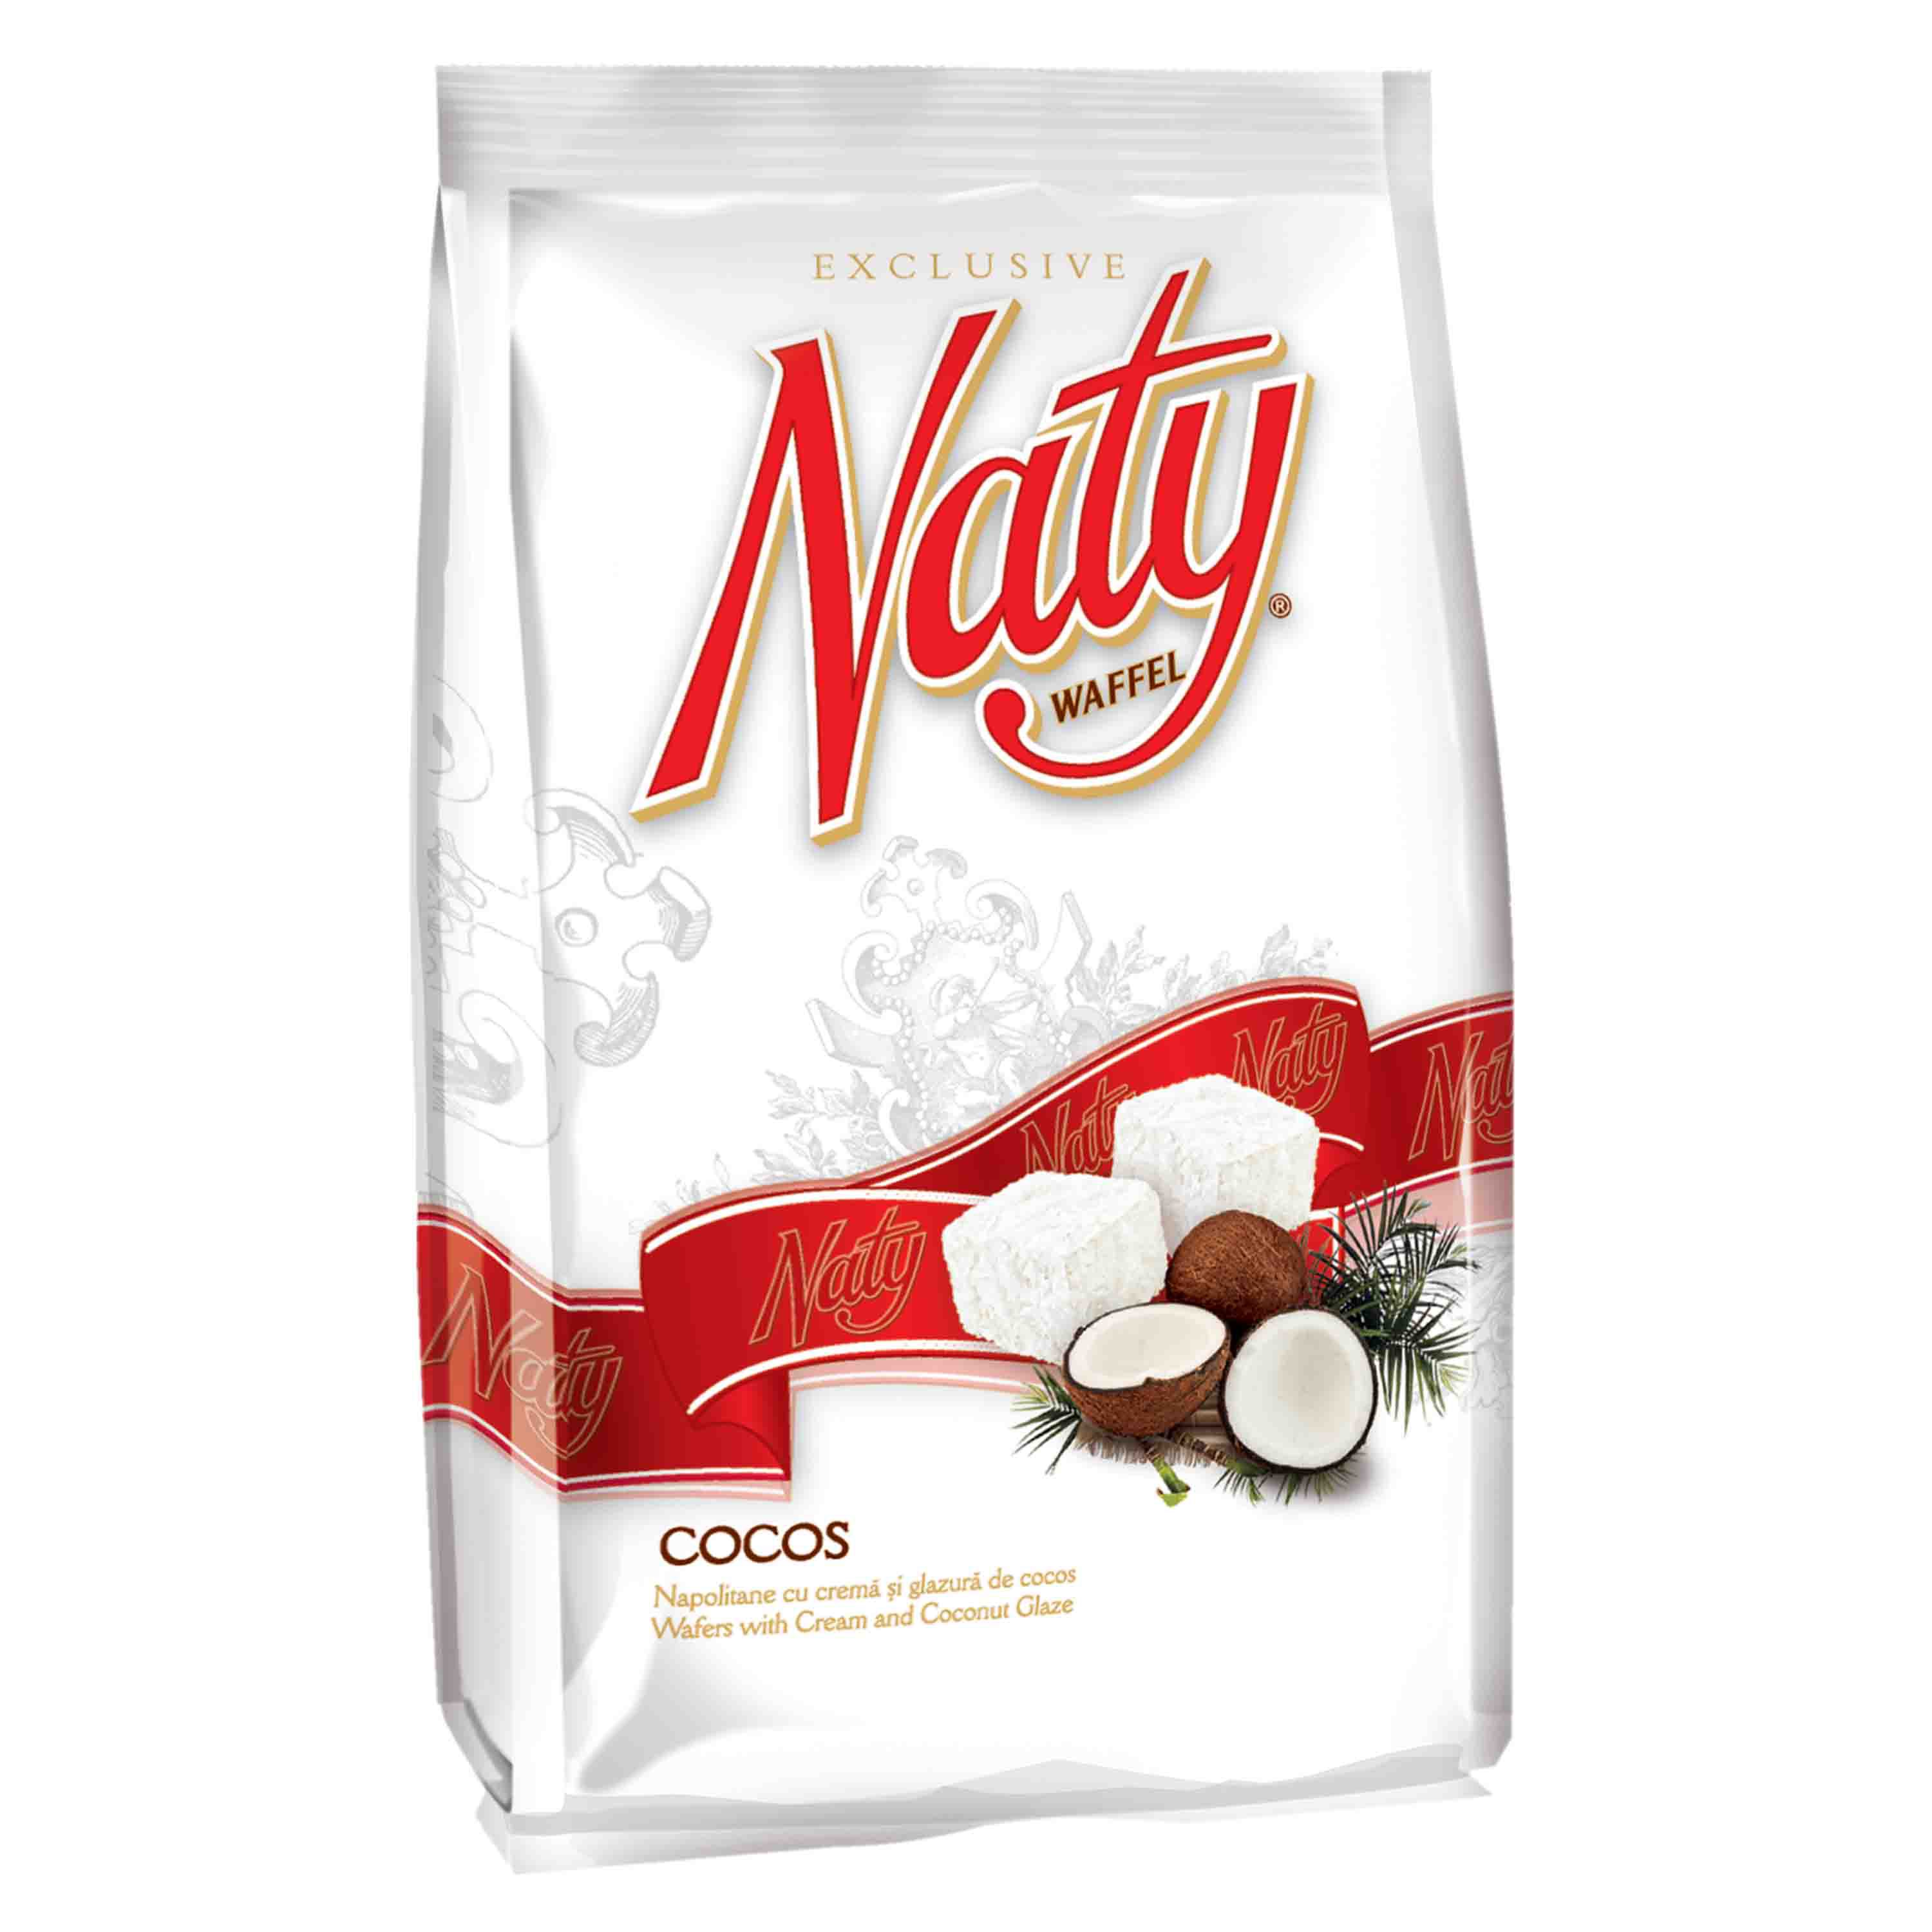 Napolitane cu crema si glazura de cocos, Naty Exclusive